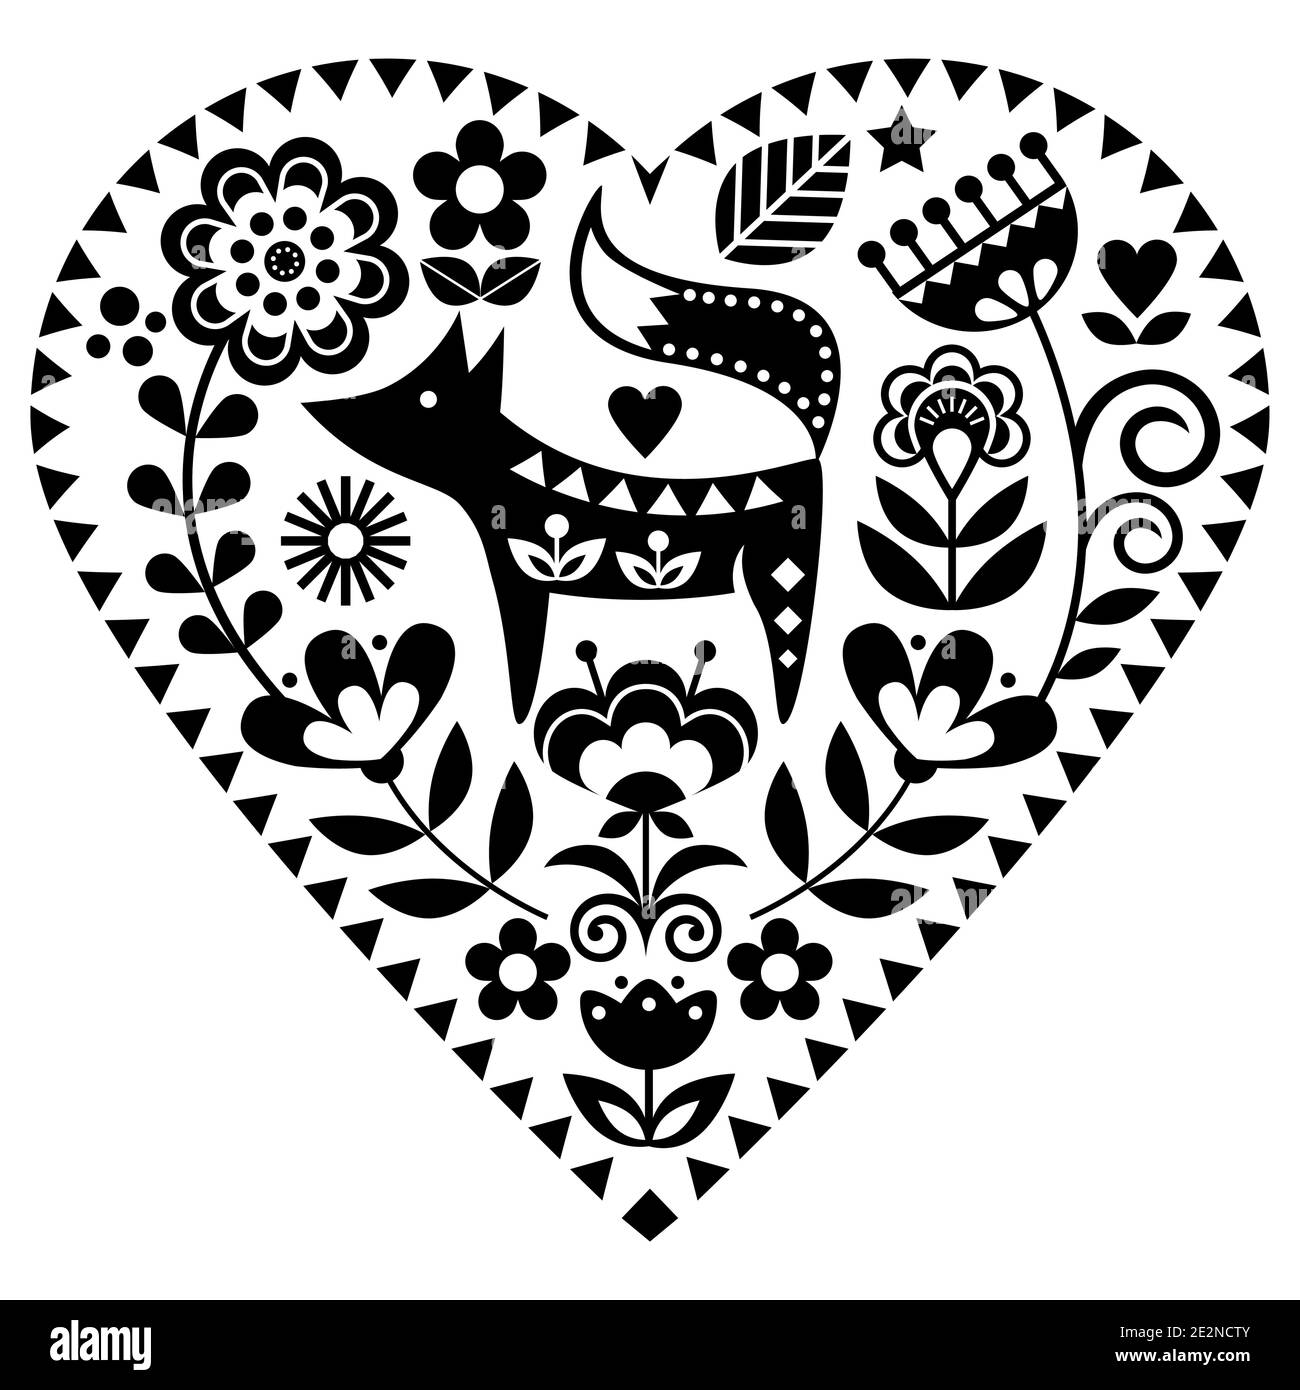 Cuore scandinavo forma popolare arte modello vettoriale con fiori e volpe, monocromo San Valentino biglietto di auguri floreali o invito al matrimonio - amore, r Illustrazione Vettoriale